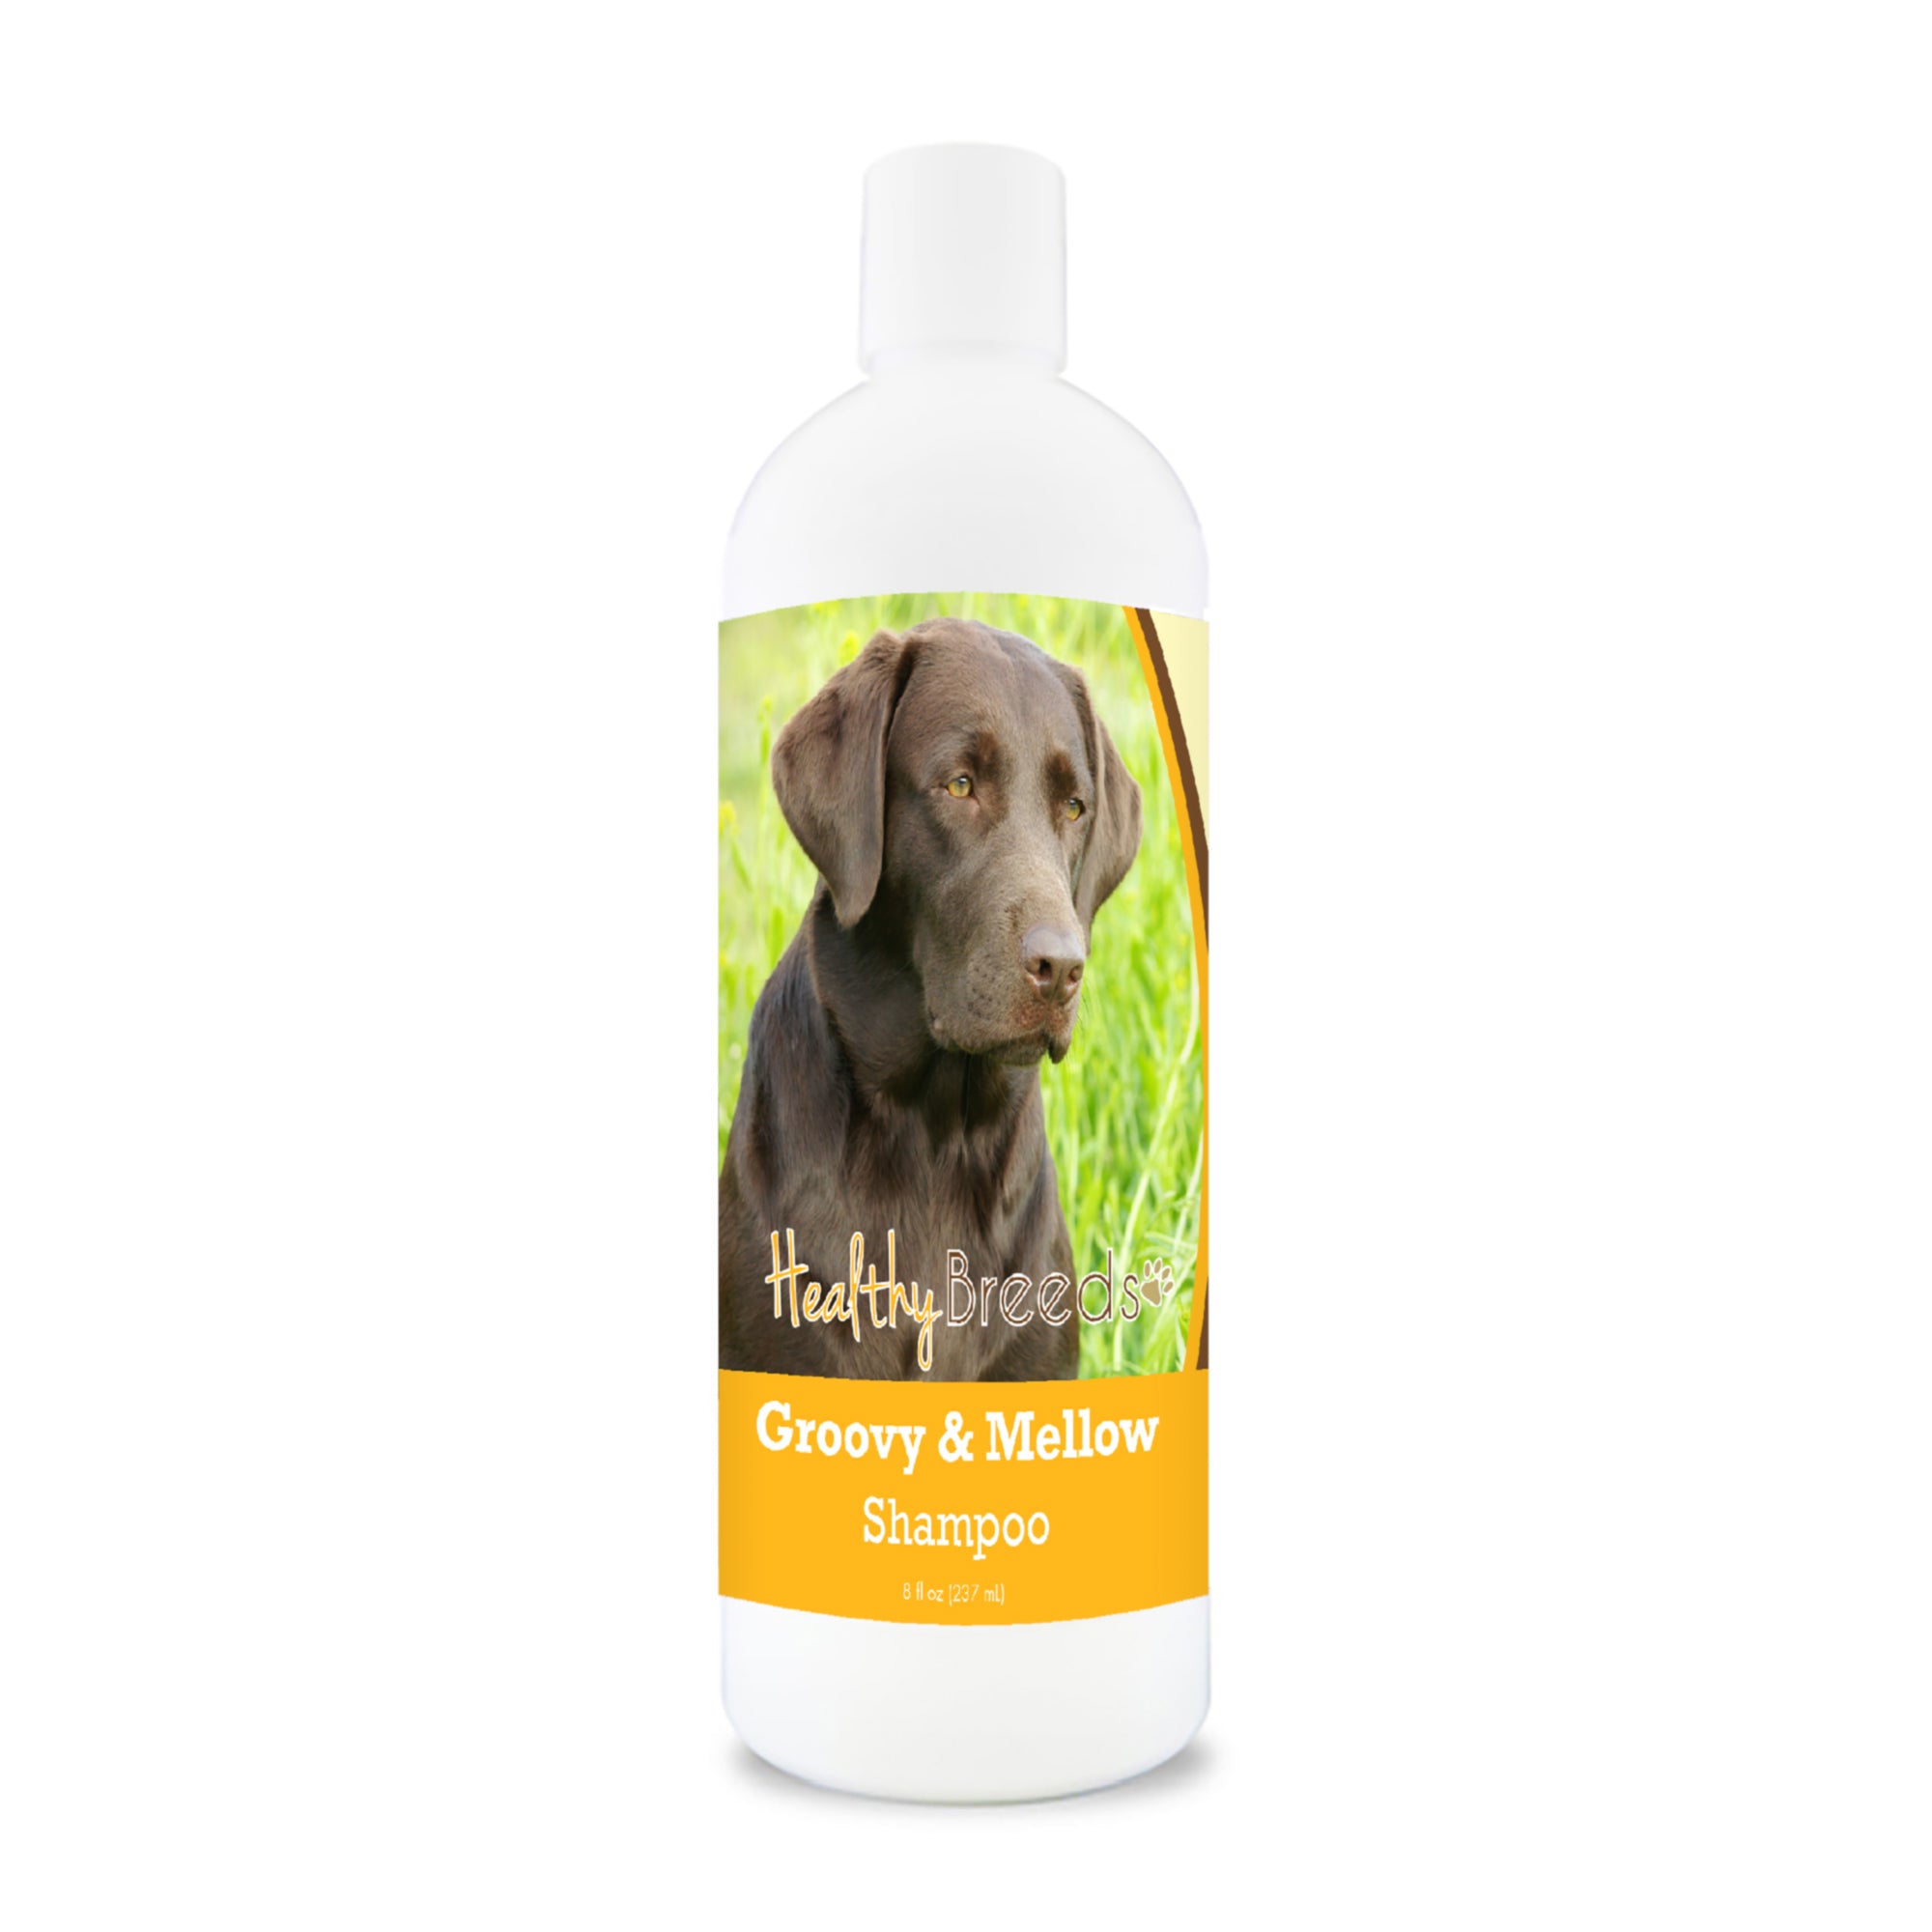 Labrador Retriever Groovy & Mellow Shampoo 8 oz